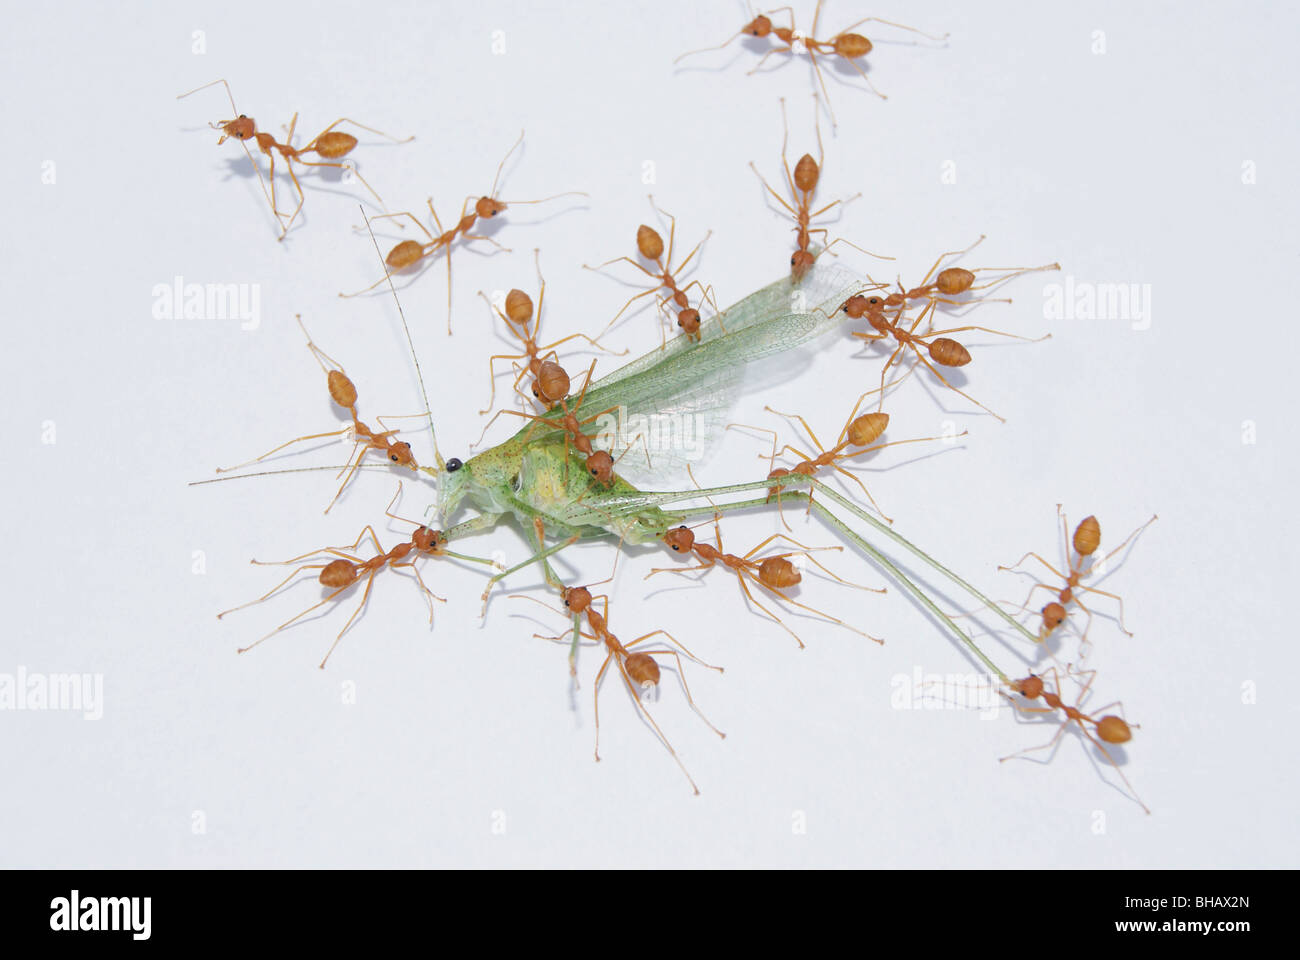 Il lavoro di squadra di formiche formiche carnying e mangiare un insetto morto Foto Stock